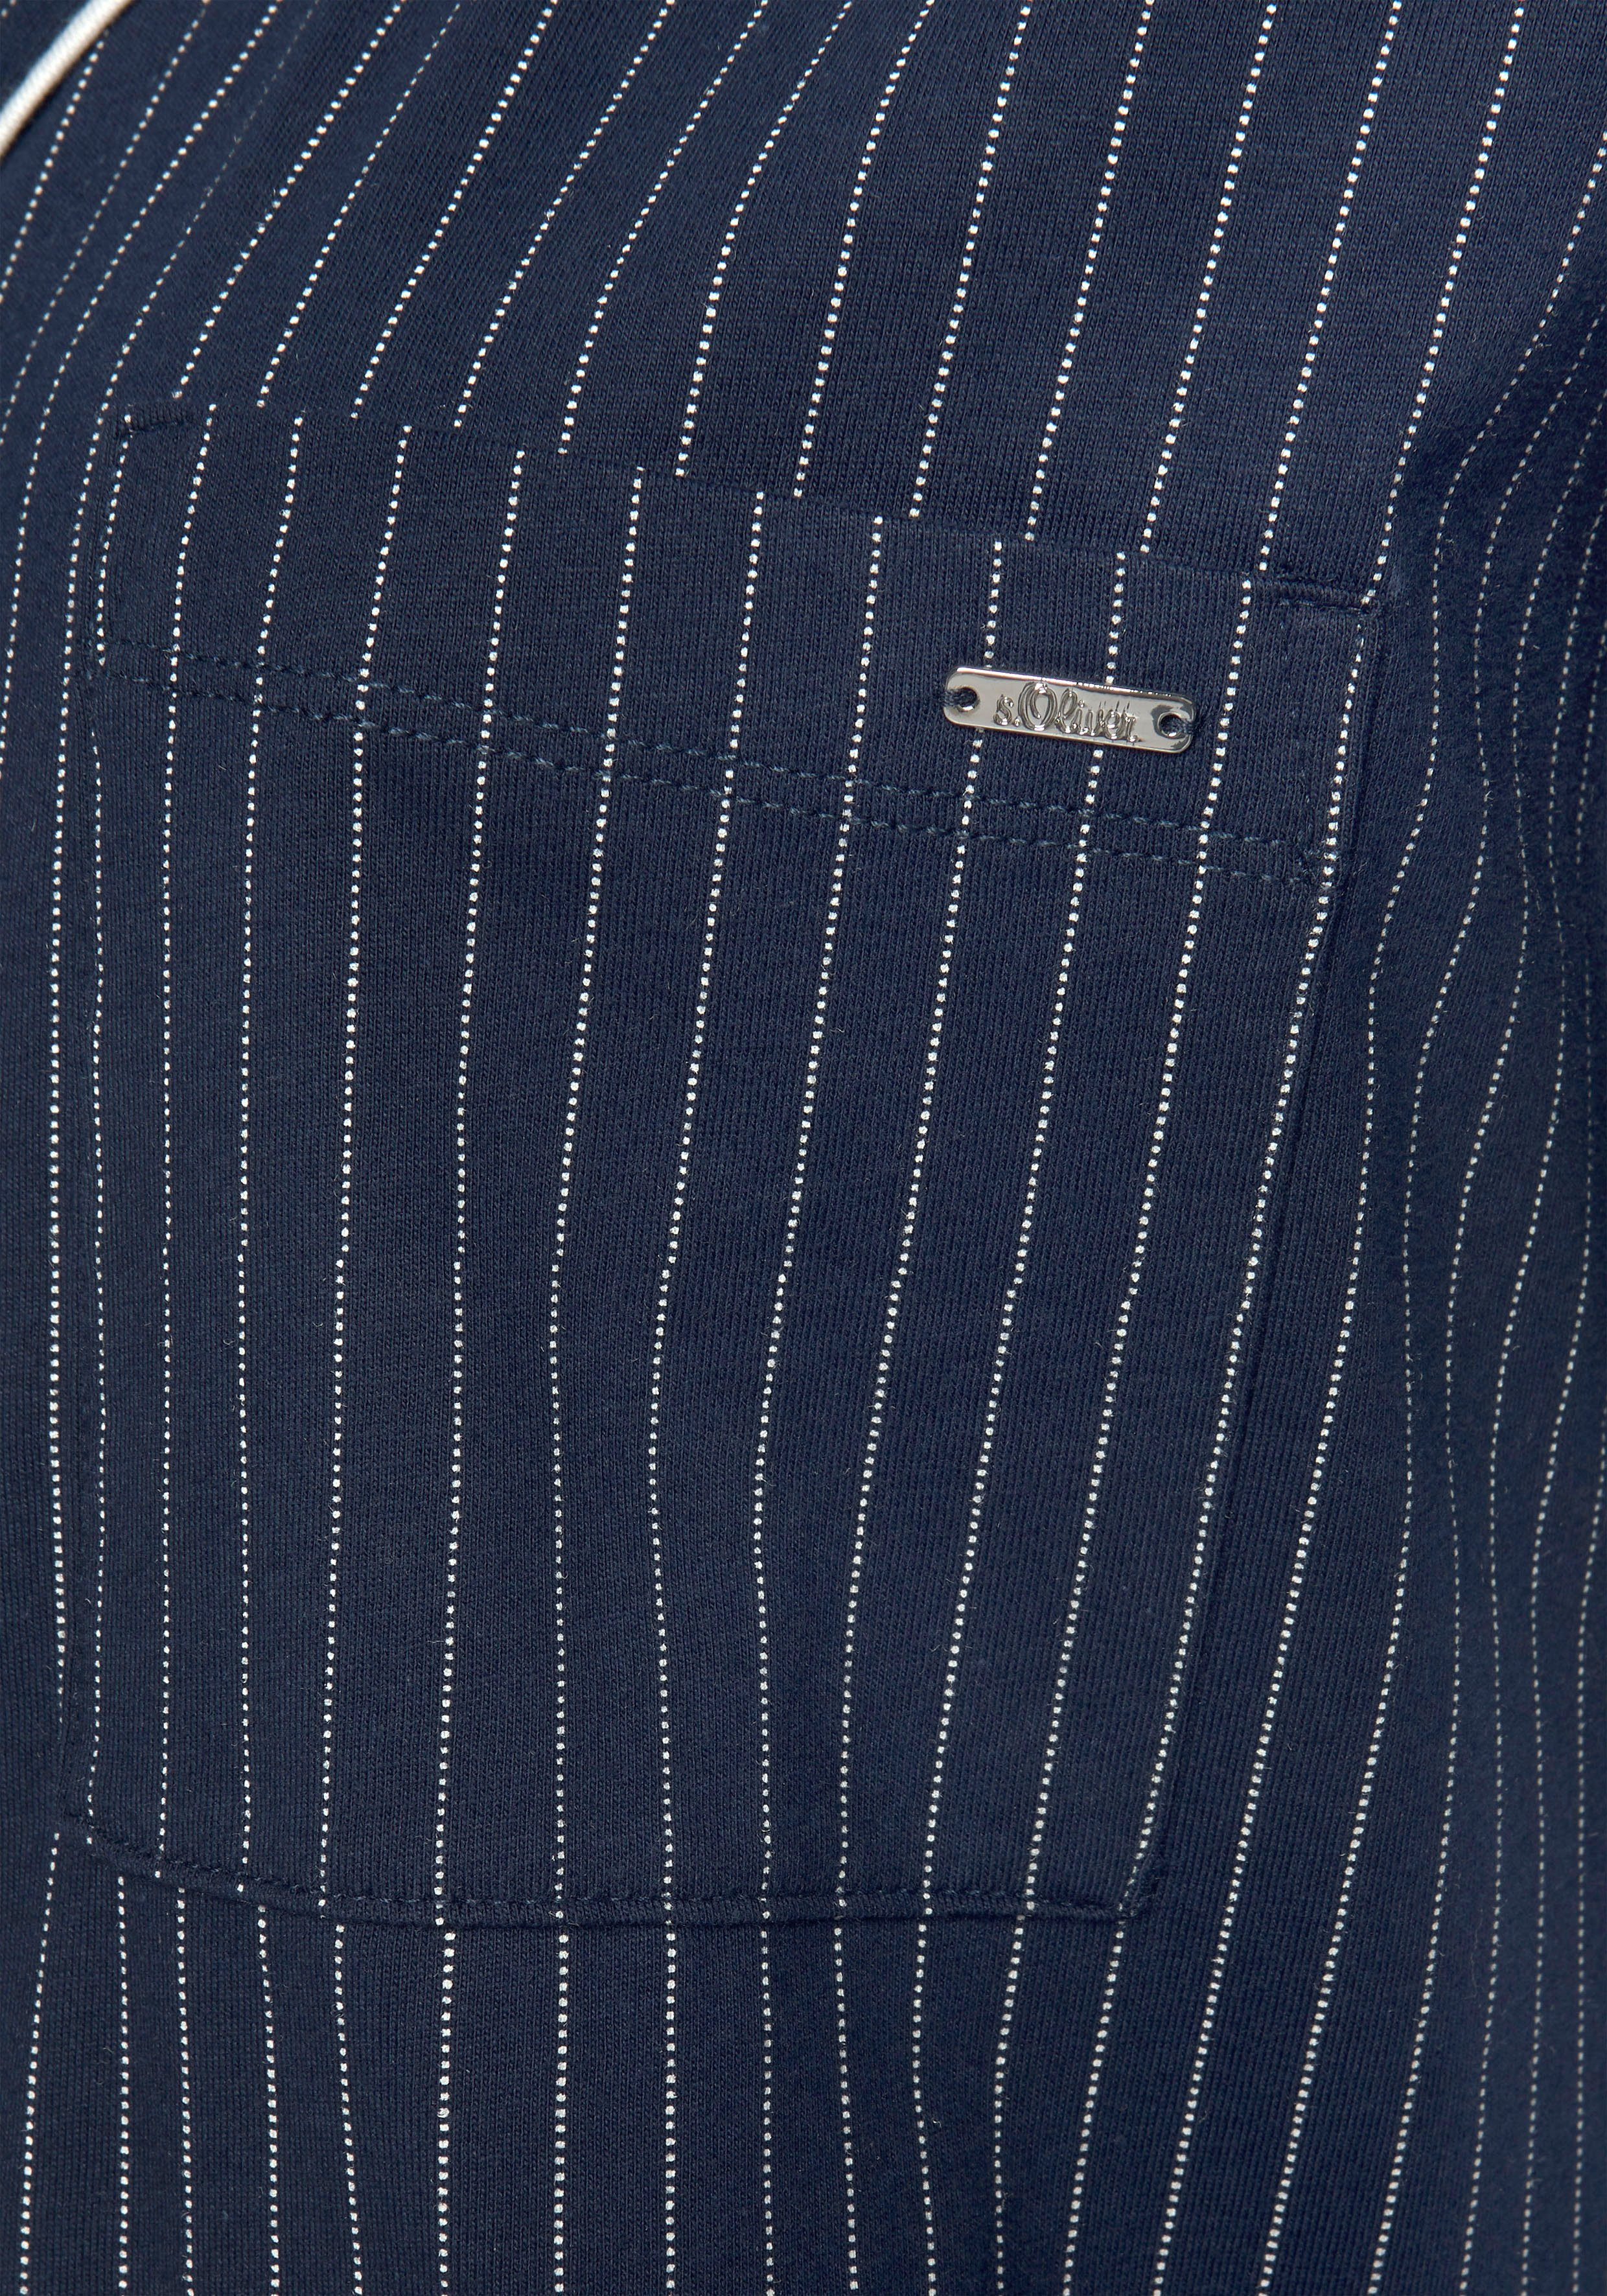 s.Oliver Brusttasche mit dunkelblau-gestreift Nachthemd aufgesetzter